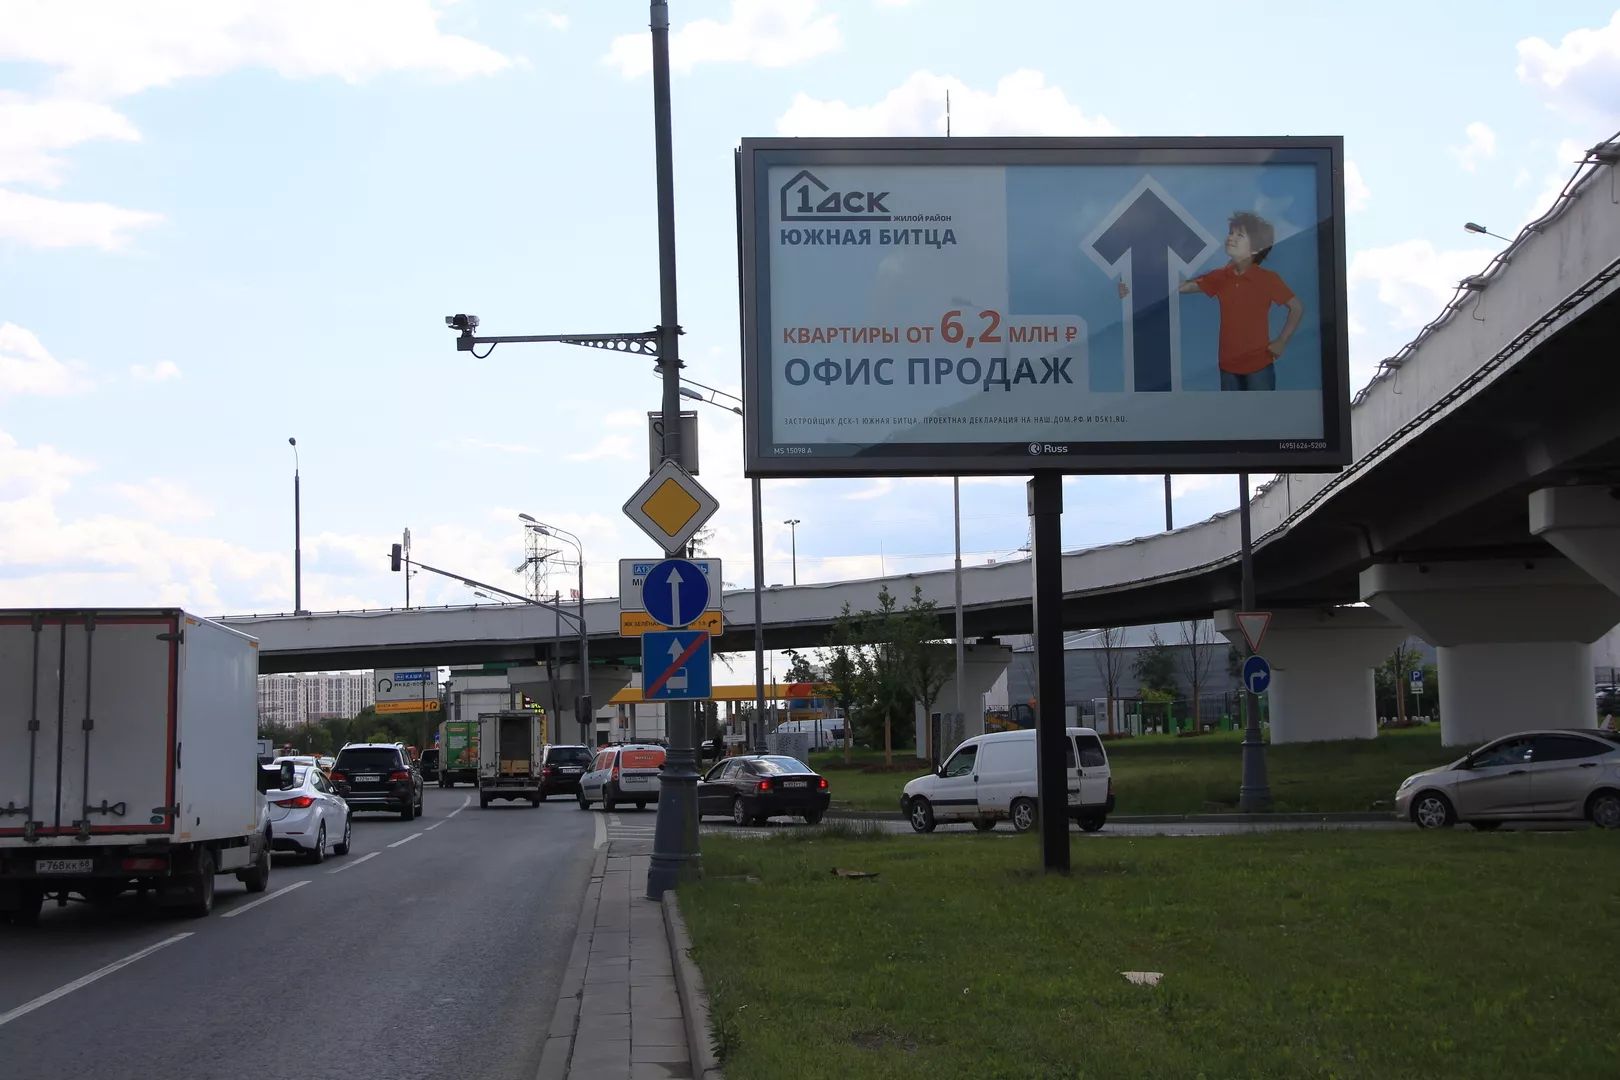 0_moskva_billboard_3x6_a_varshavskoe_sh_170g_rp_as_avtograd_skrollera.jpg